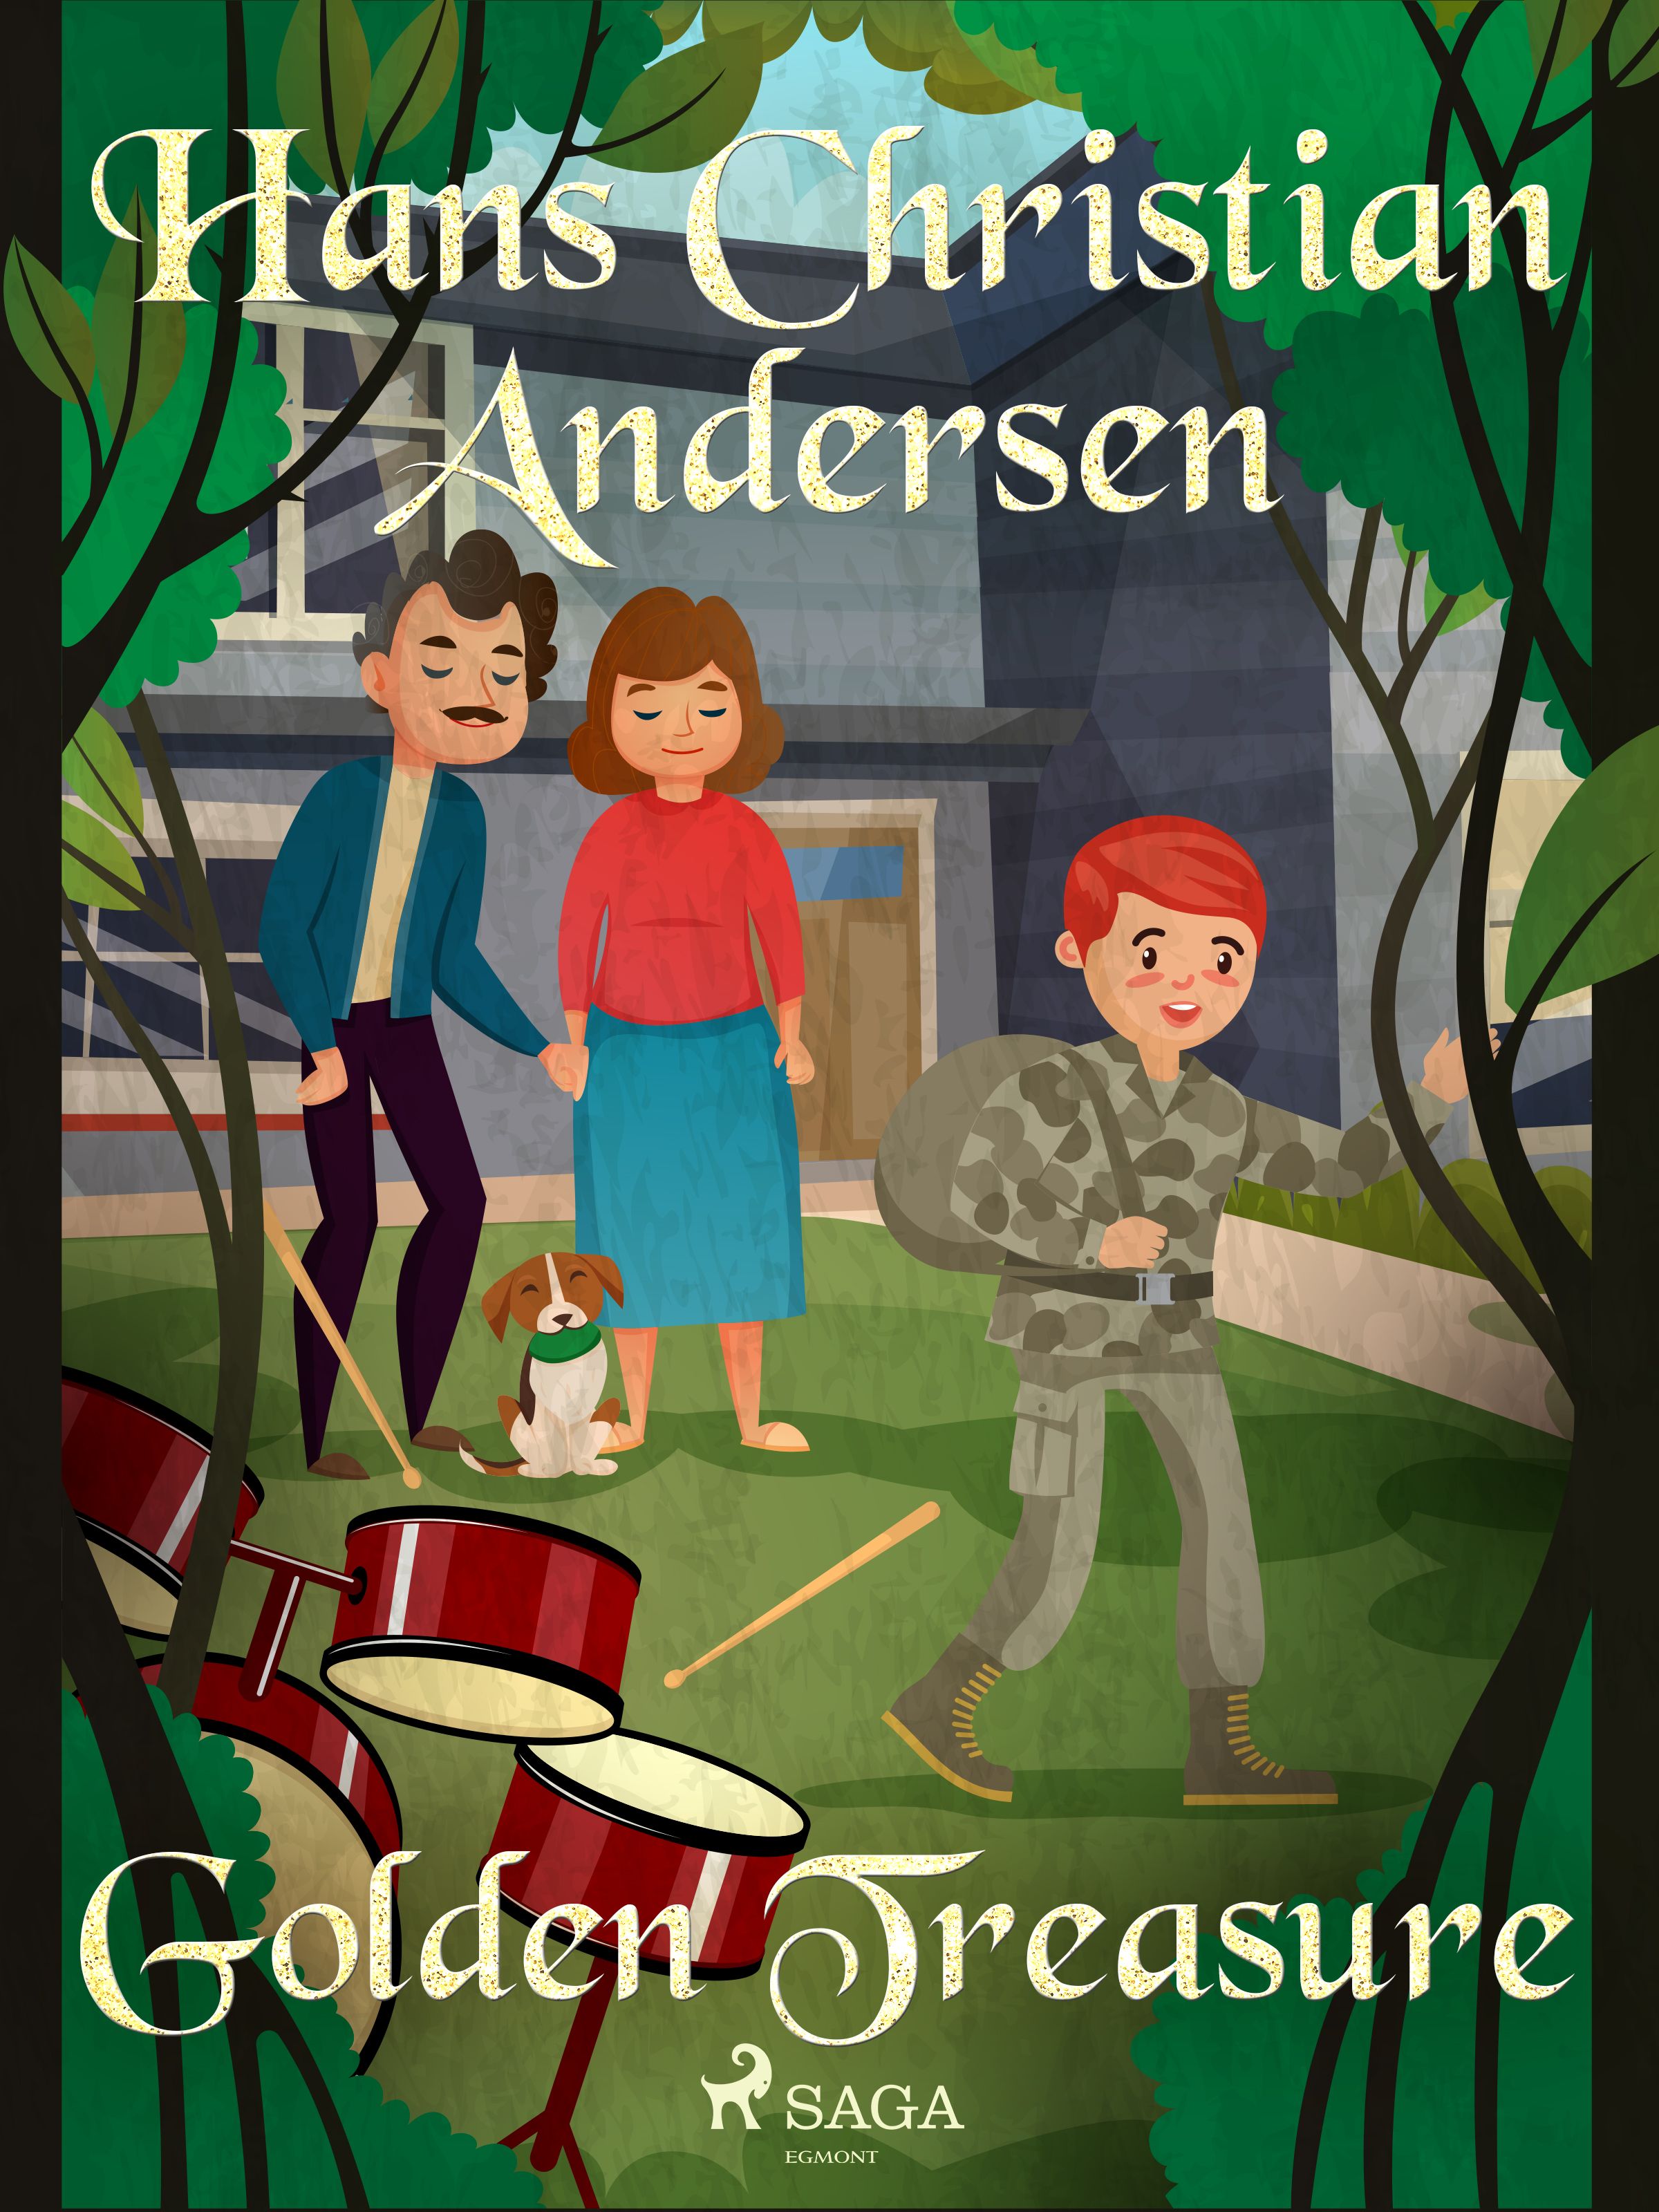 Golden Treasure, e-bok av Hans Christian Andersen